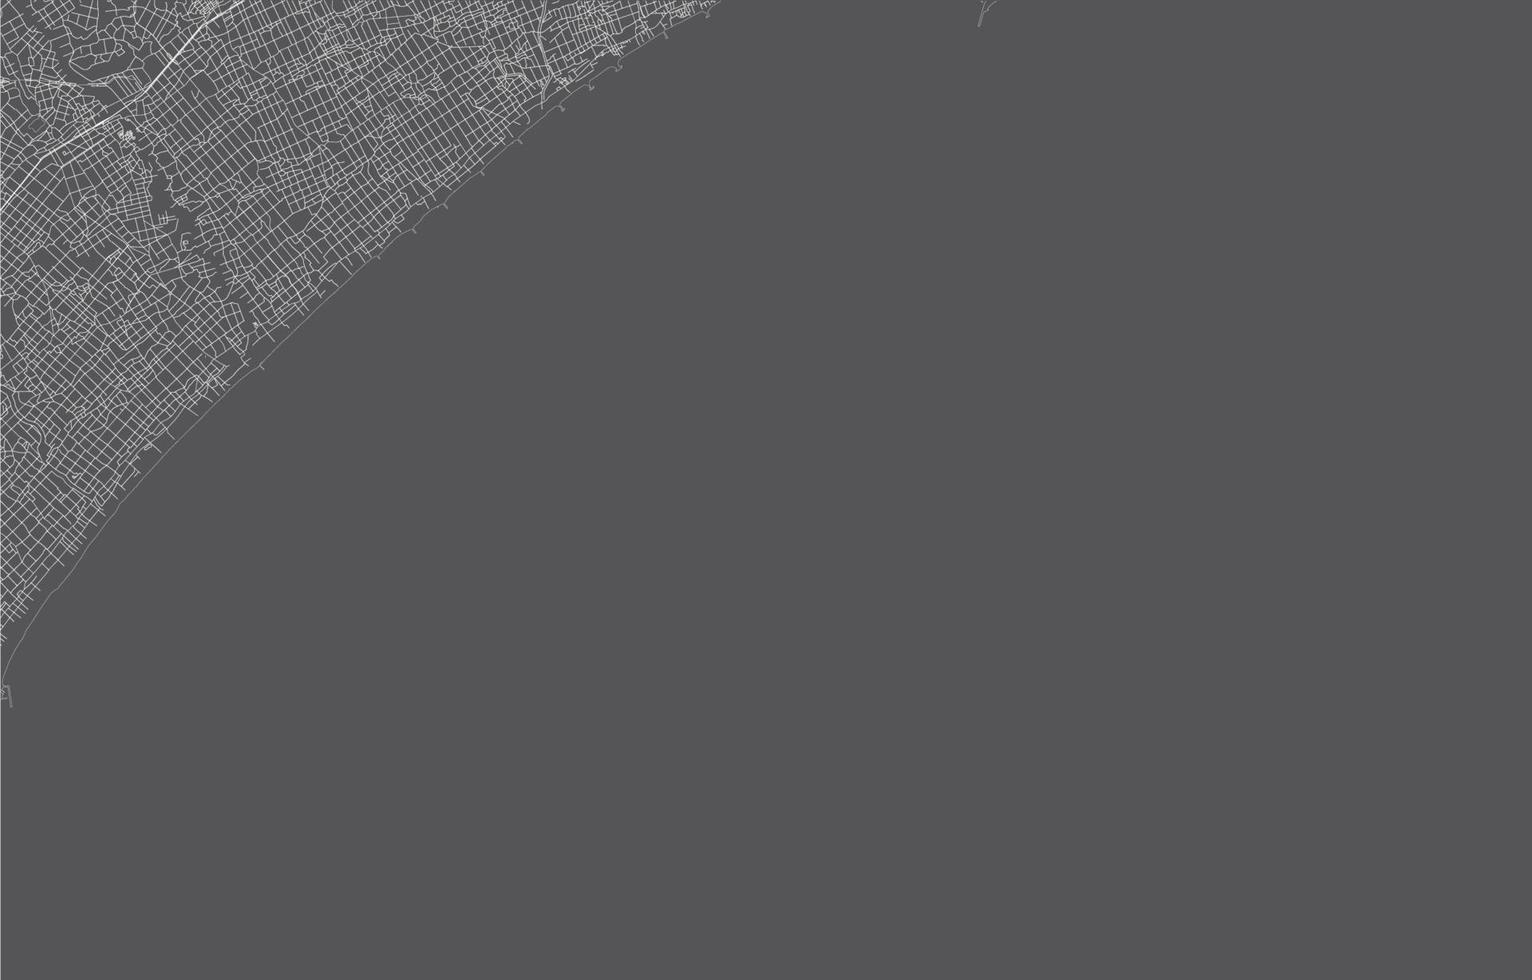 carte de la ville du japon. illustration vectorielle avec fond noir, contour blanc, scène avec la ville du japon, ville, route, rue, carte urbaine, emplacement, point de repère, transport. conception pour impression, affiche, papier peint. vecteur